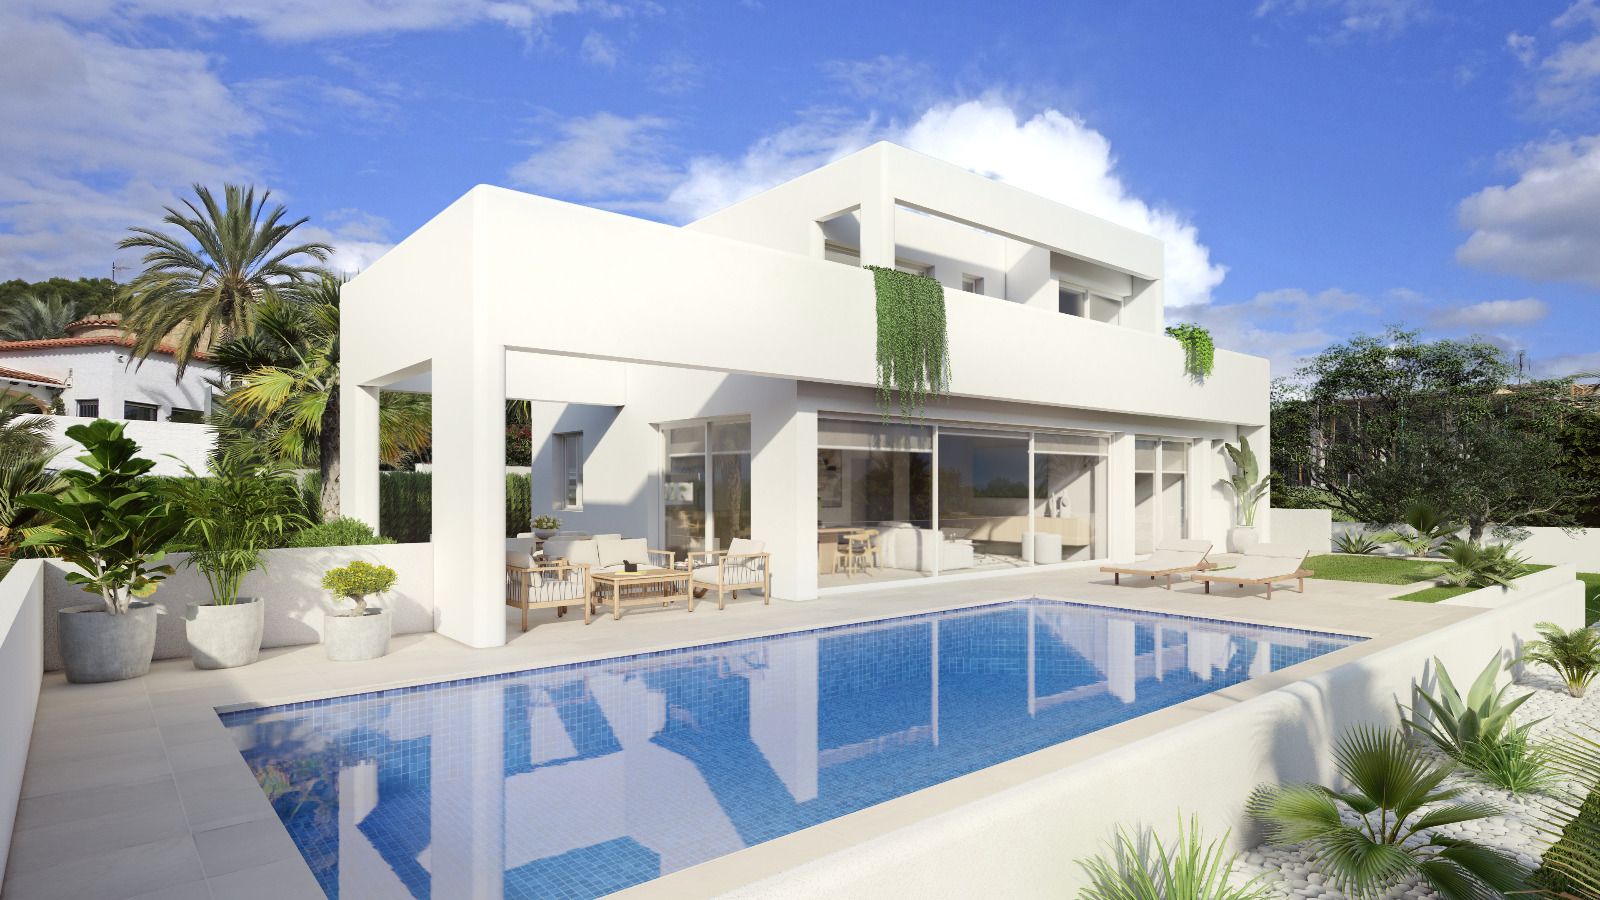 Tolle Luxusvilla im Ibiza-Stil mit herrlichem Blick auf das Meer und den Peñon d'Ifach